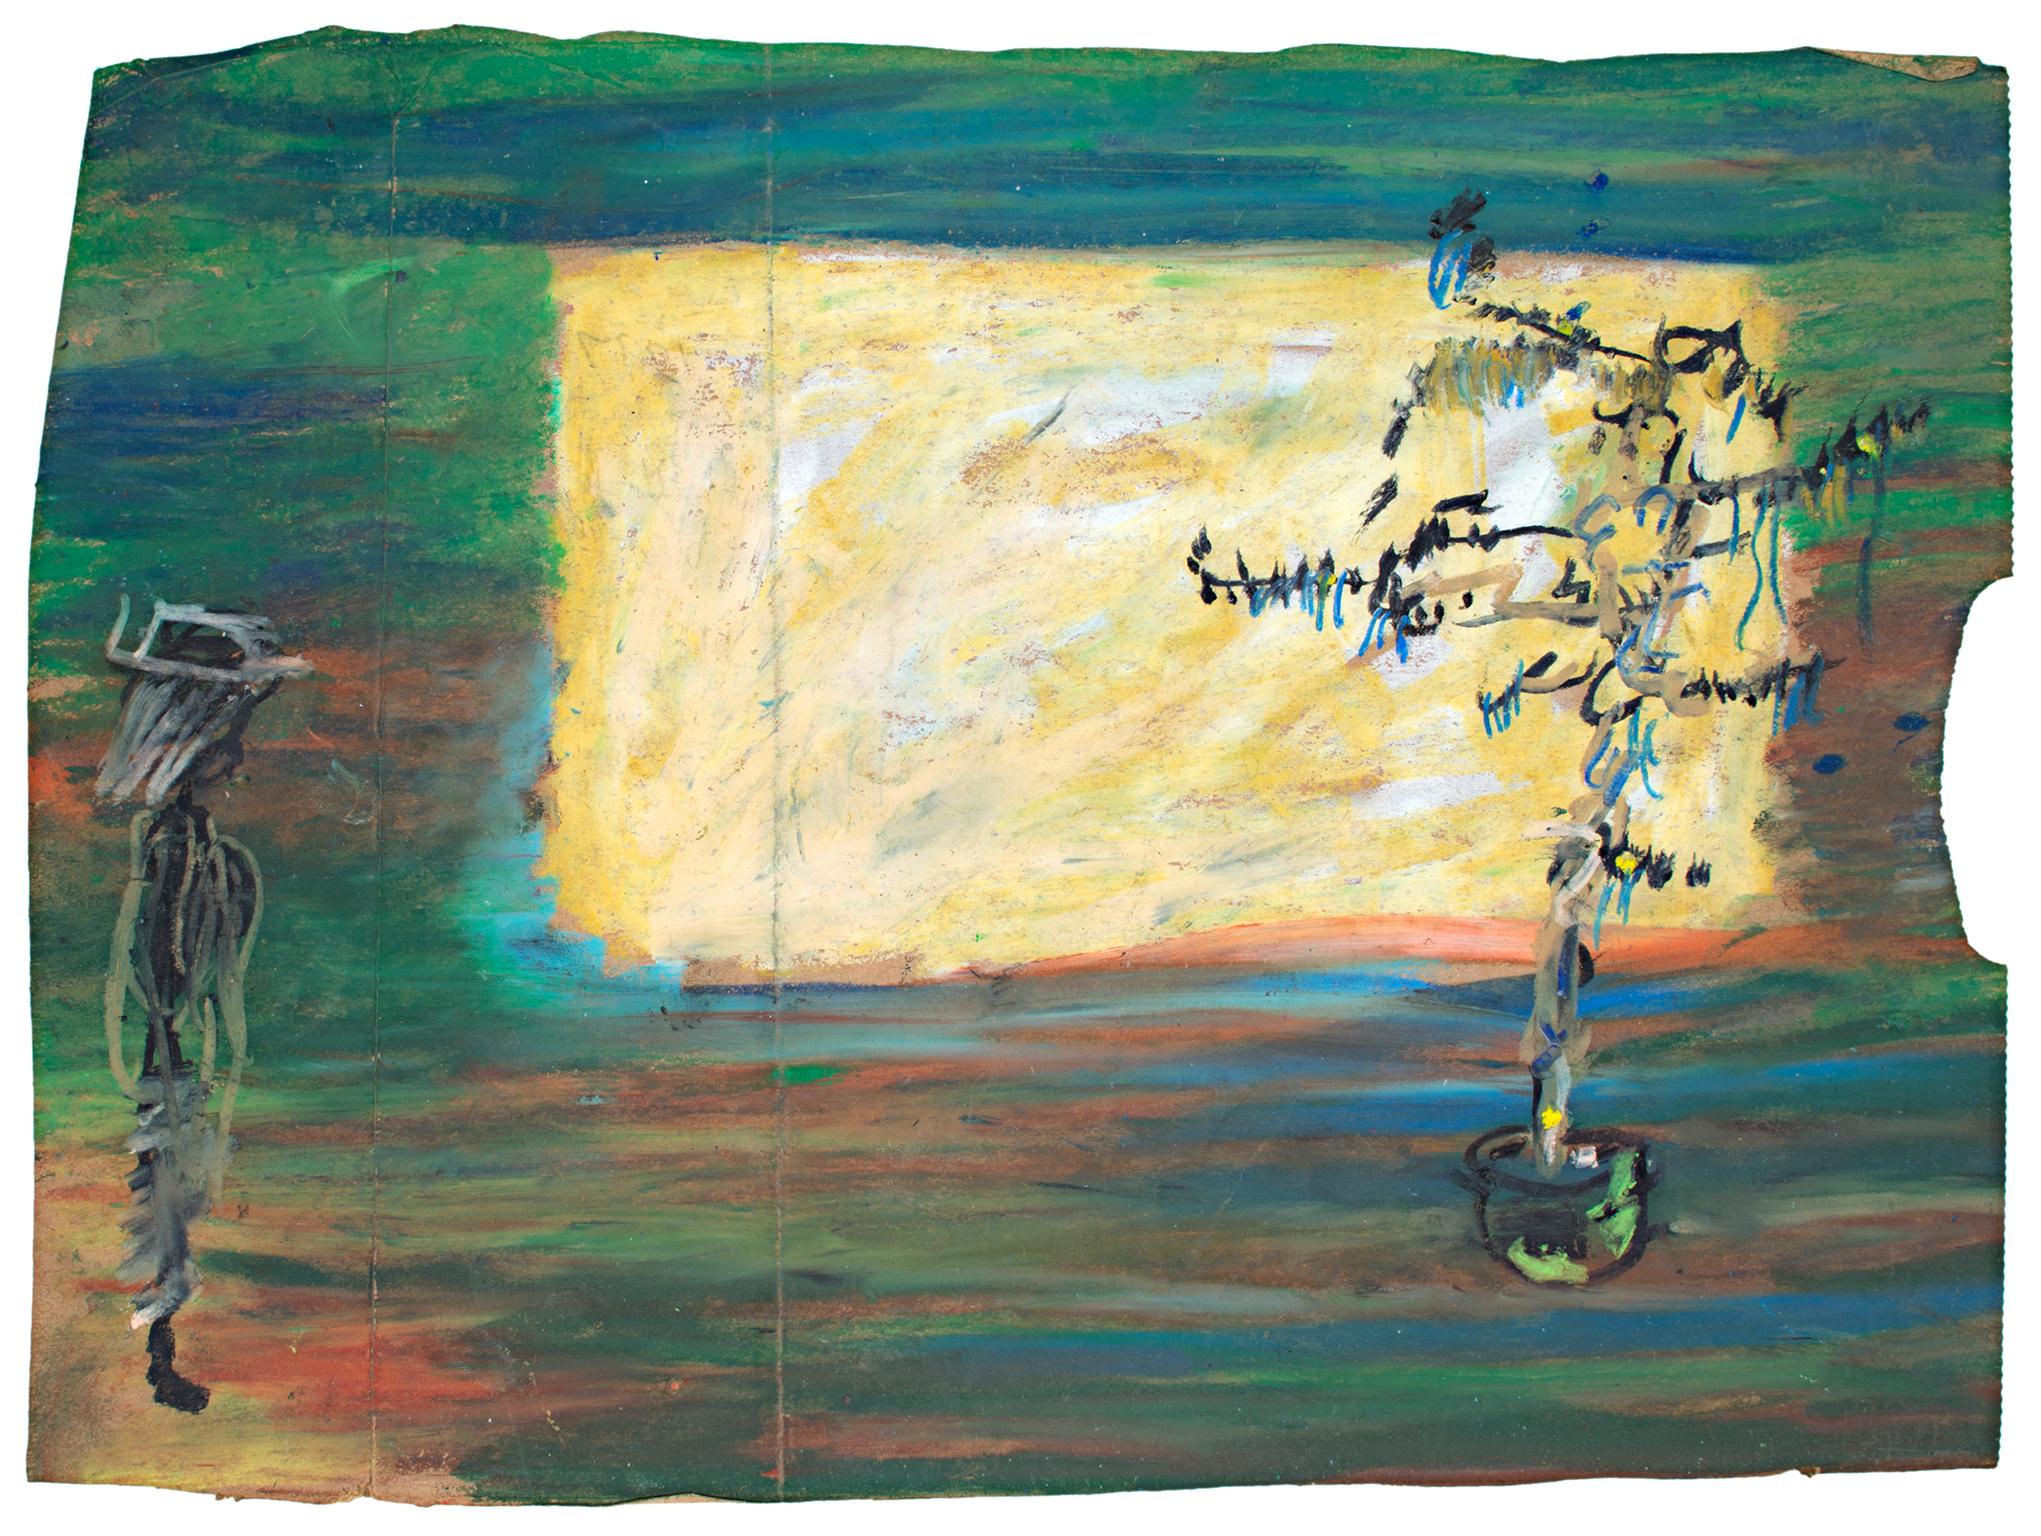 "Person Vs. Pflanze Vs. Abstract Canvas on Blased Wall" ist eine Original-Ölpastellzeichnung auf einer Einkaufstüte von Reginald K. Gee. Der Künstler hat das Werk auf der Rückseite signiert. Dieses Werk zeigt eine abstrakte Figur mit Hut auf der